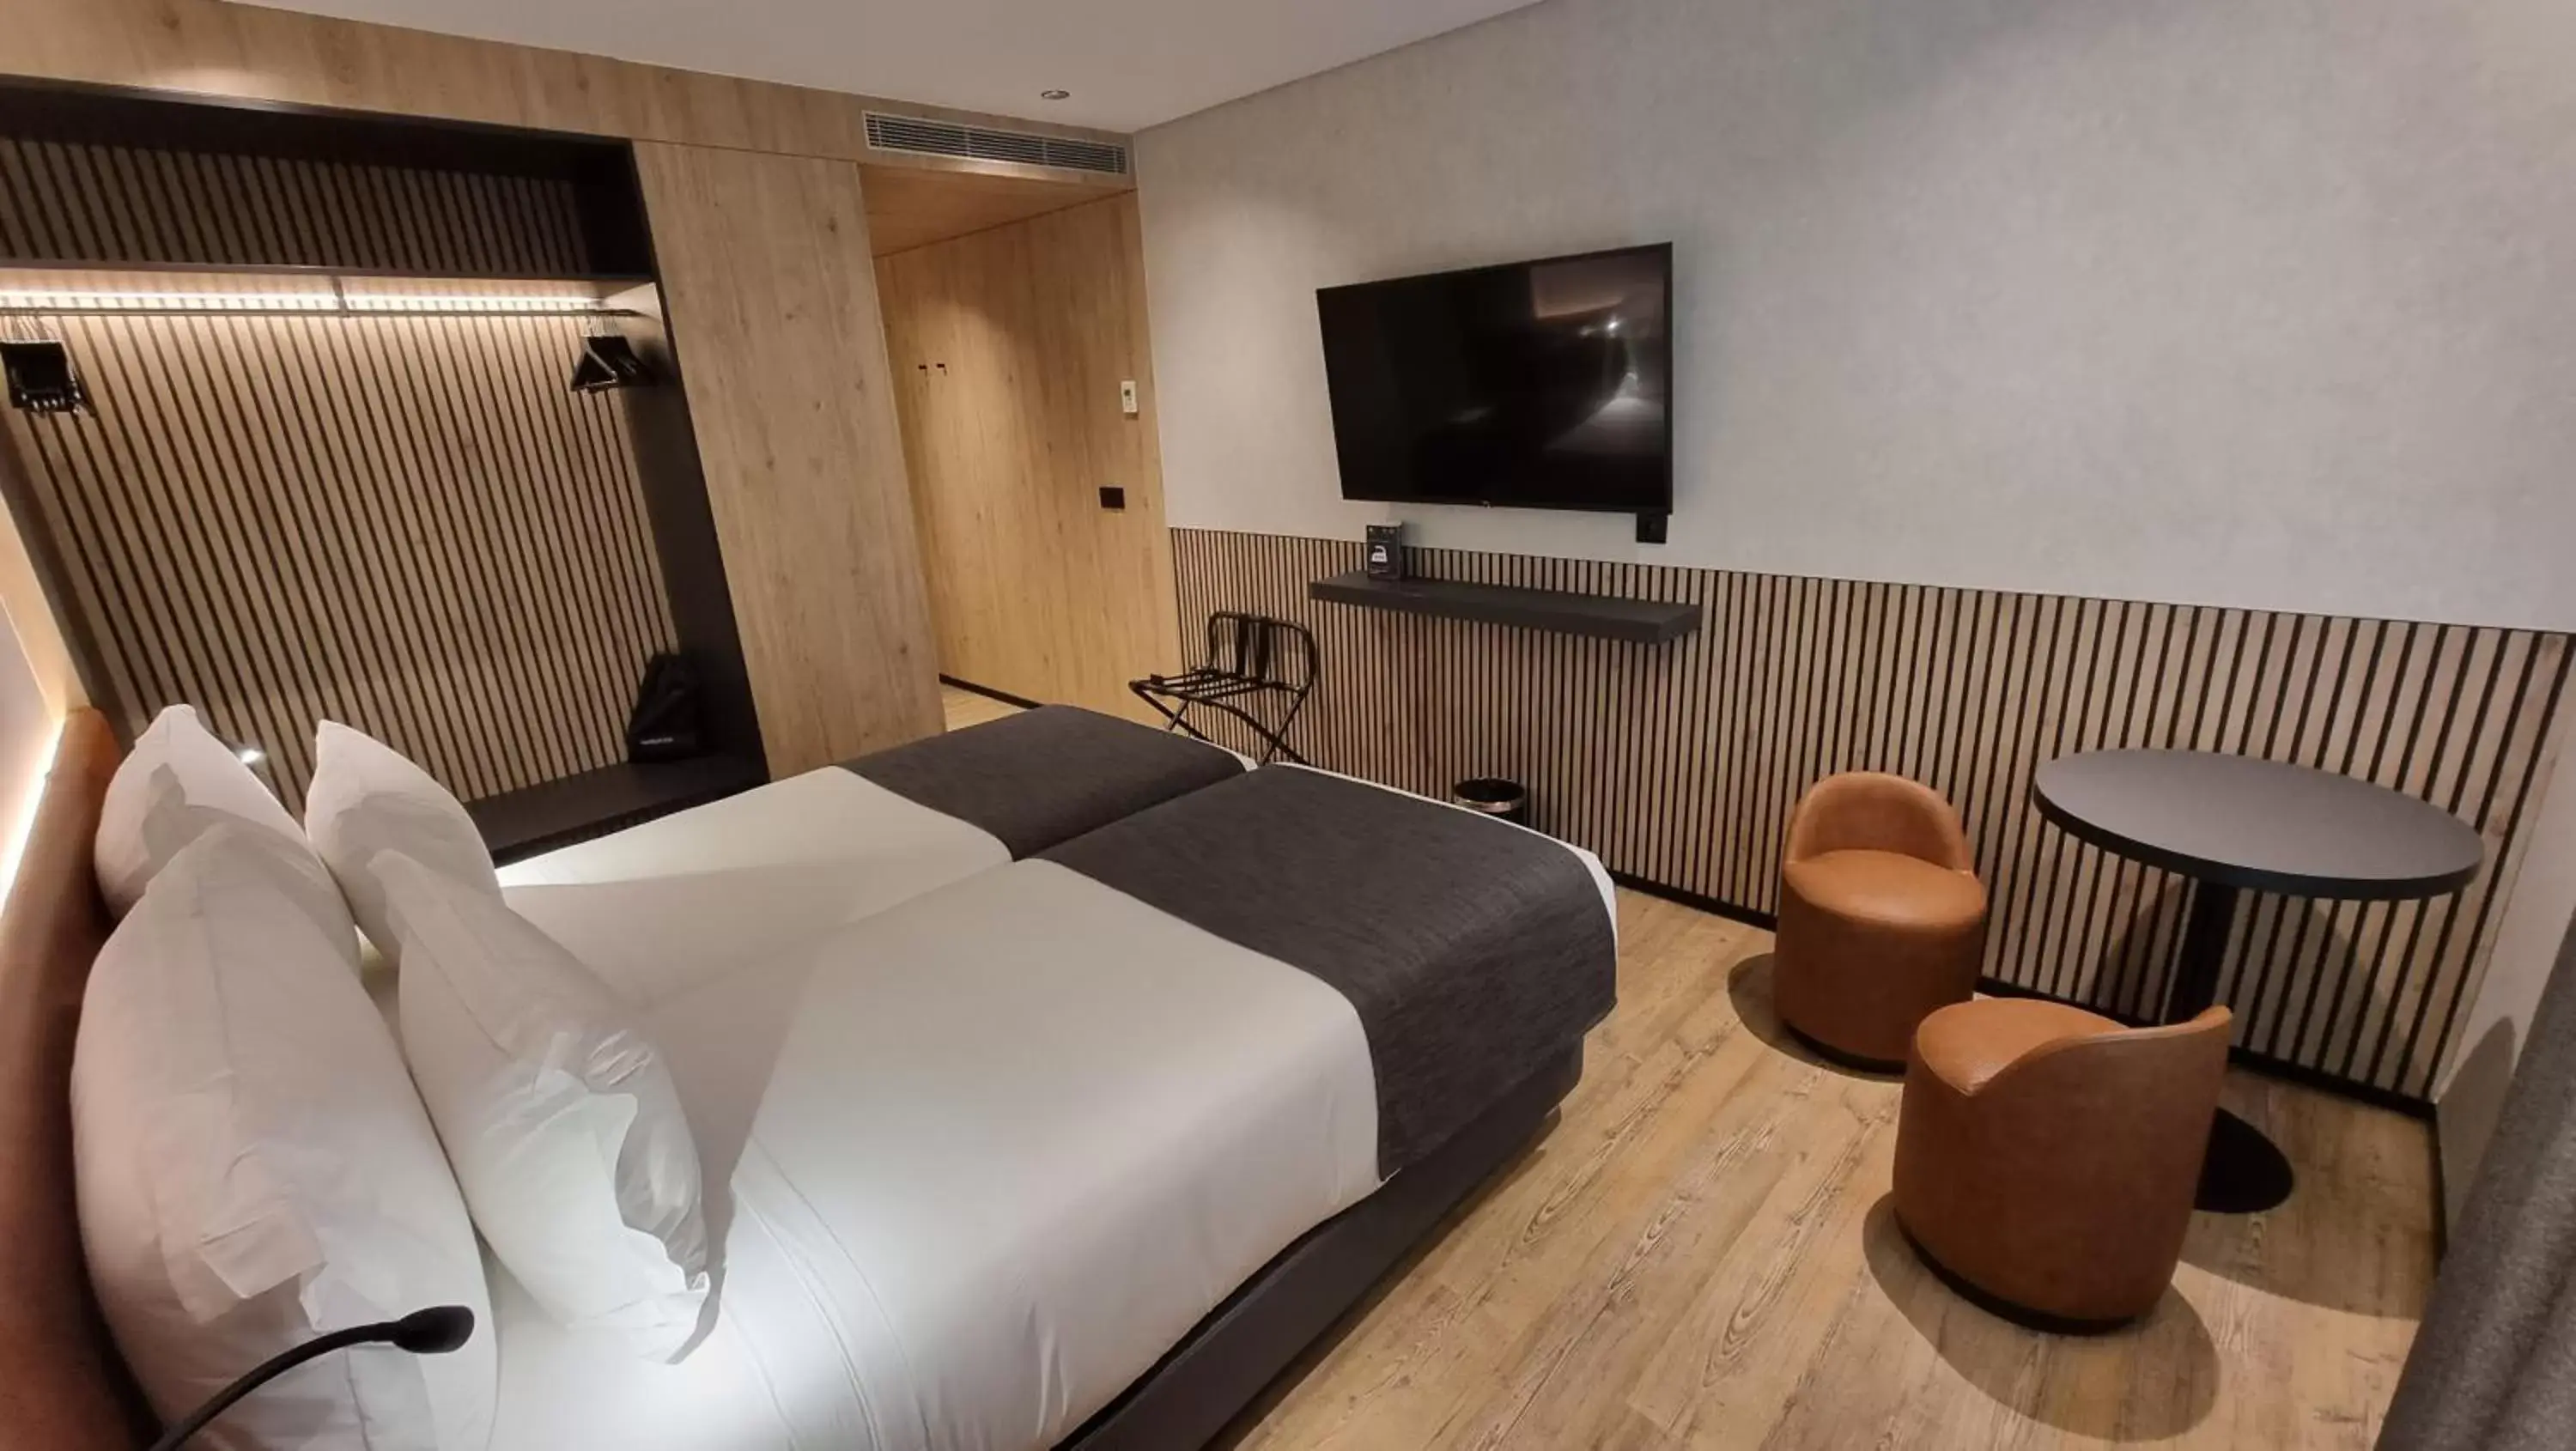 Bedroom, TV/Entertainment Center in Hotel Principe Avila